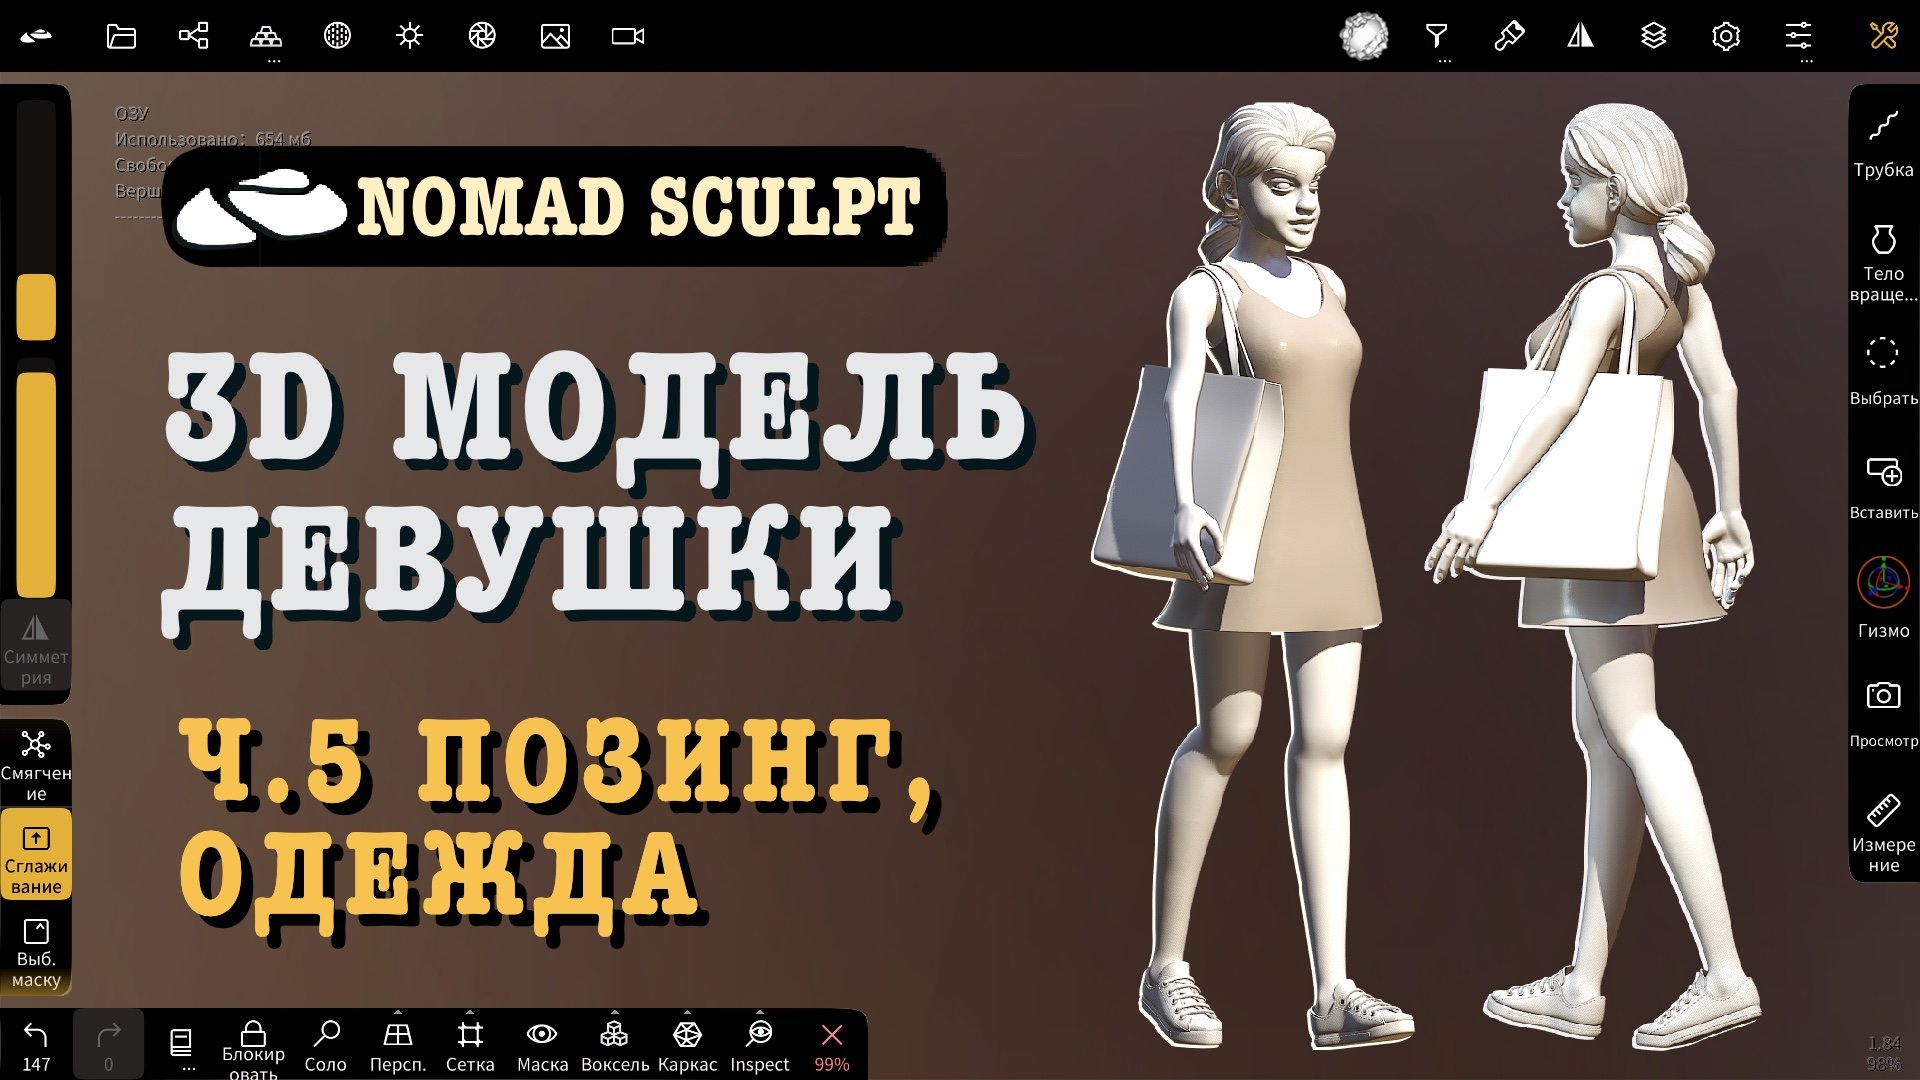 Ч.5. 3d модель девушки в Nomad Sculpt. Позинг, одежда. Урок 3д для начинающих